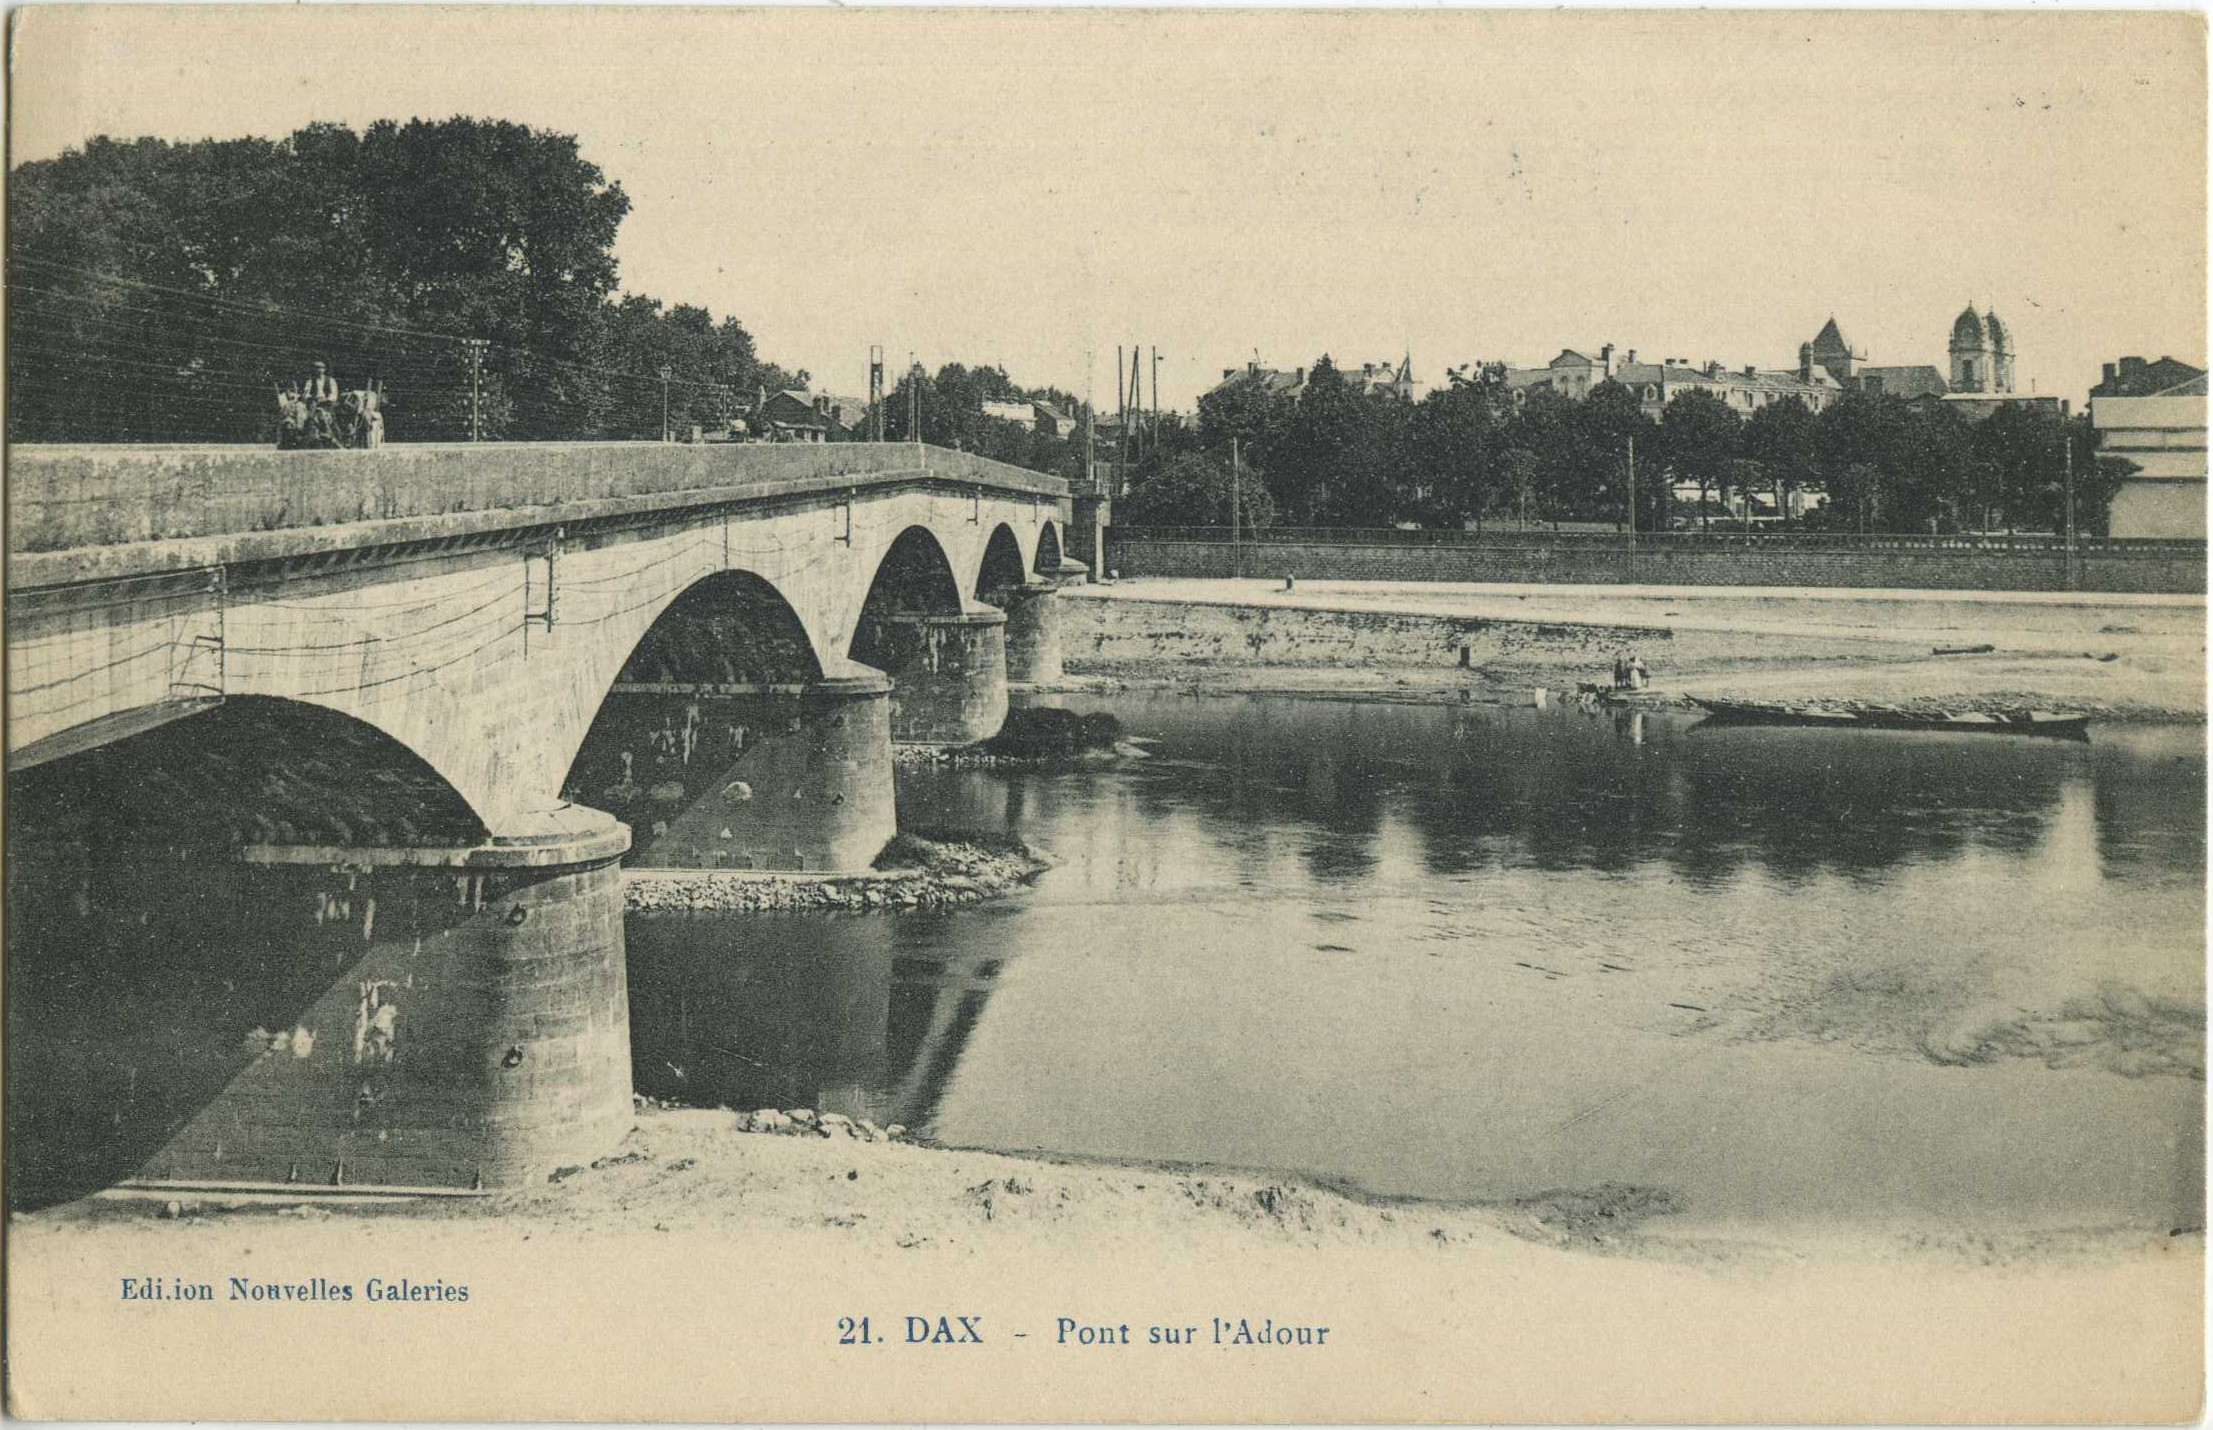 Dax - Pont sur l'Adour